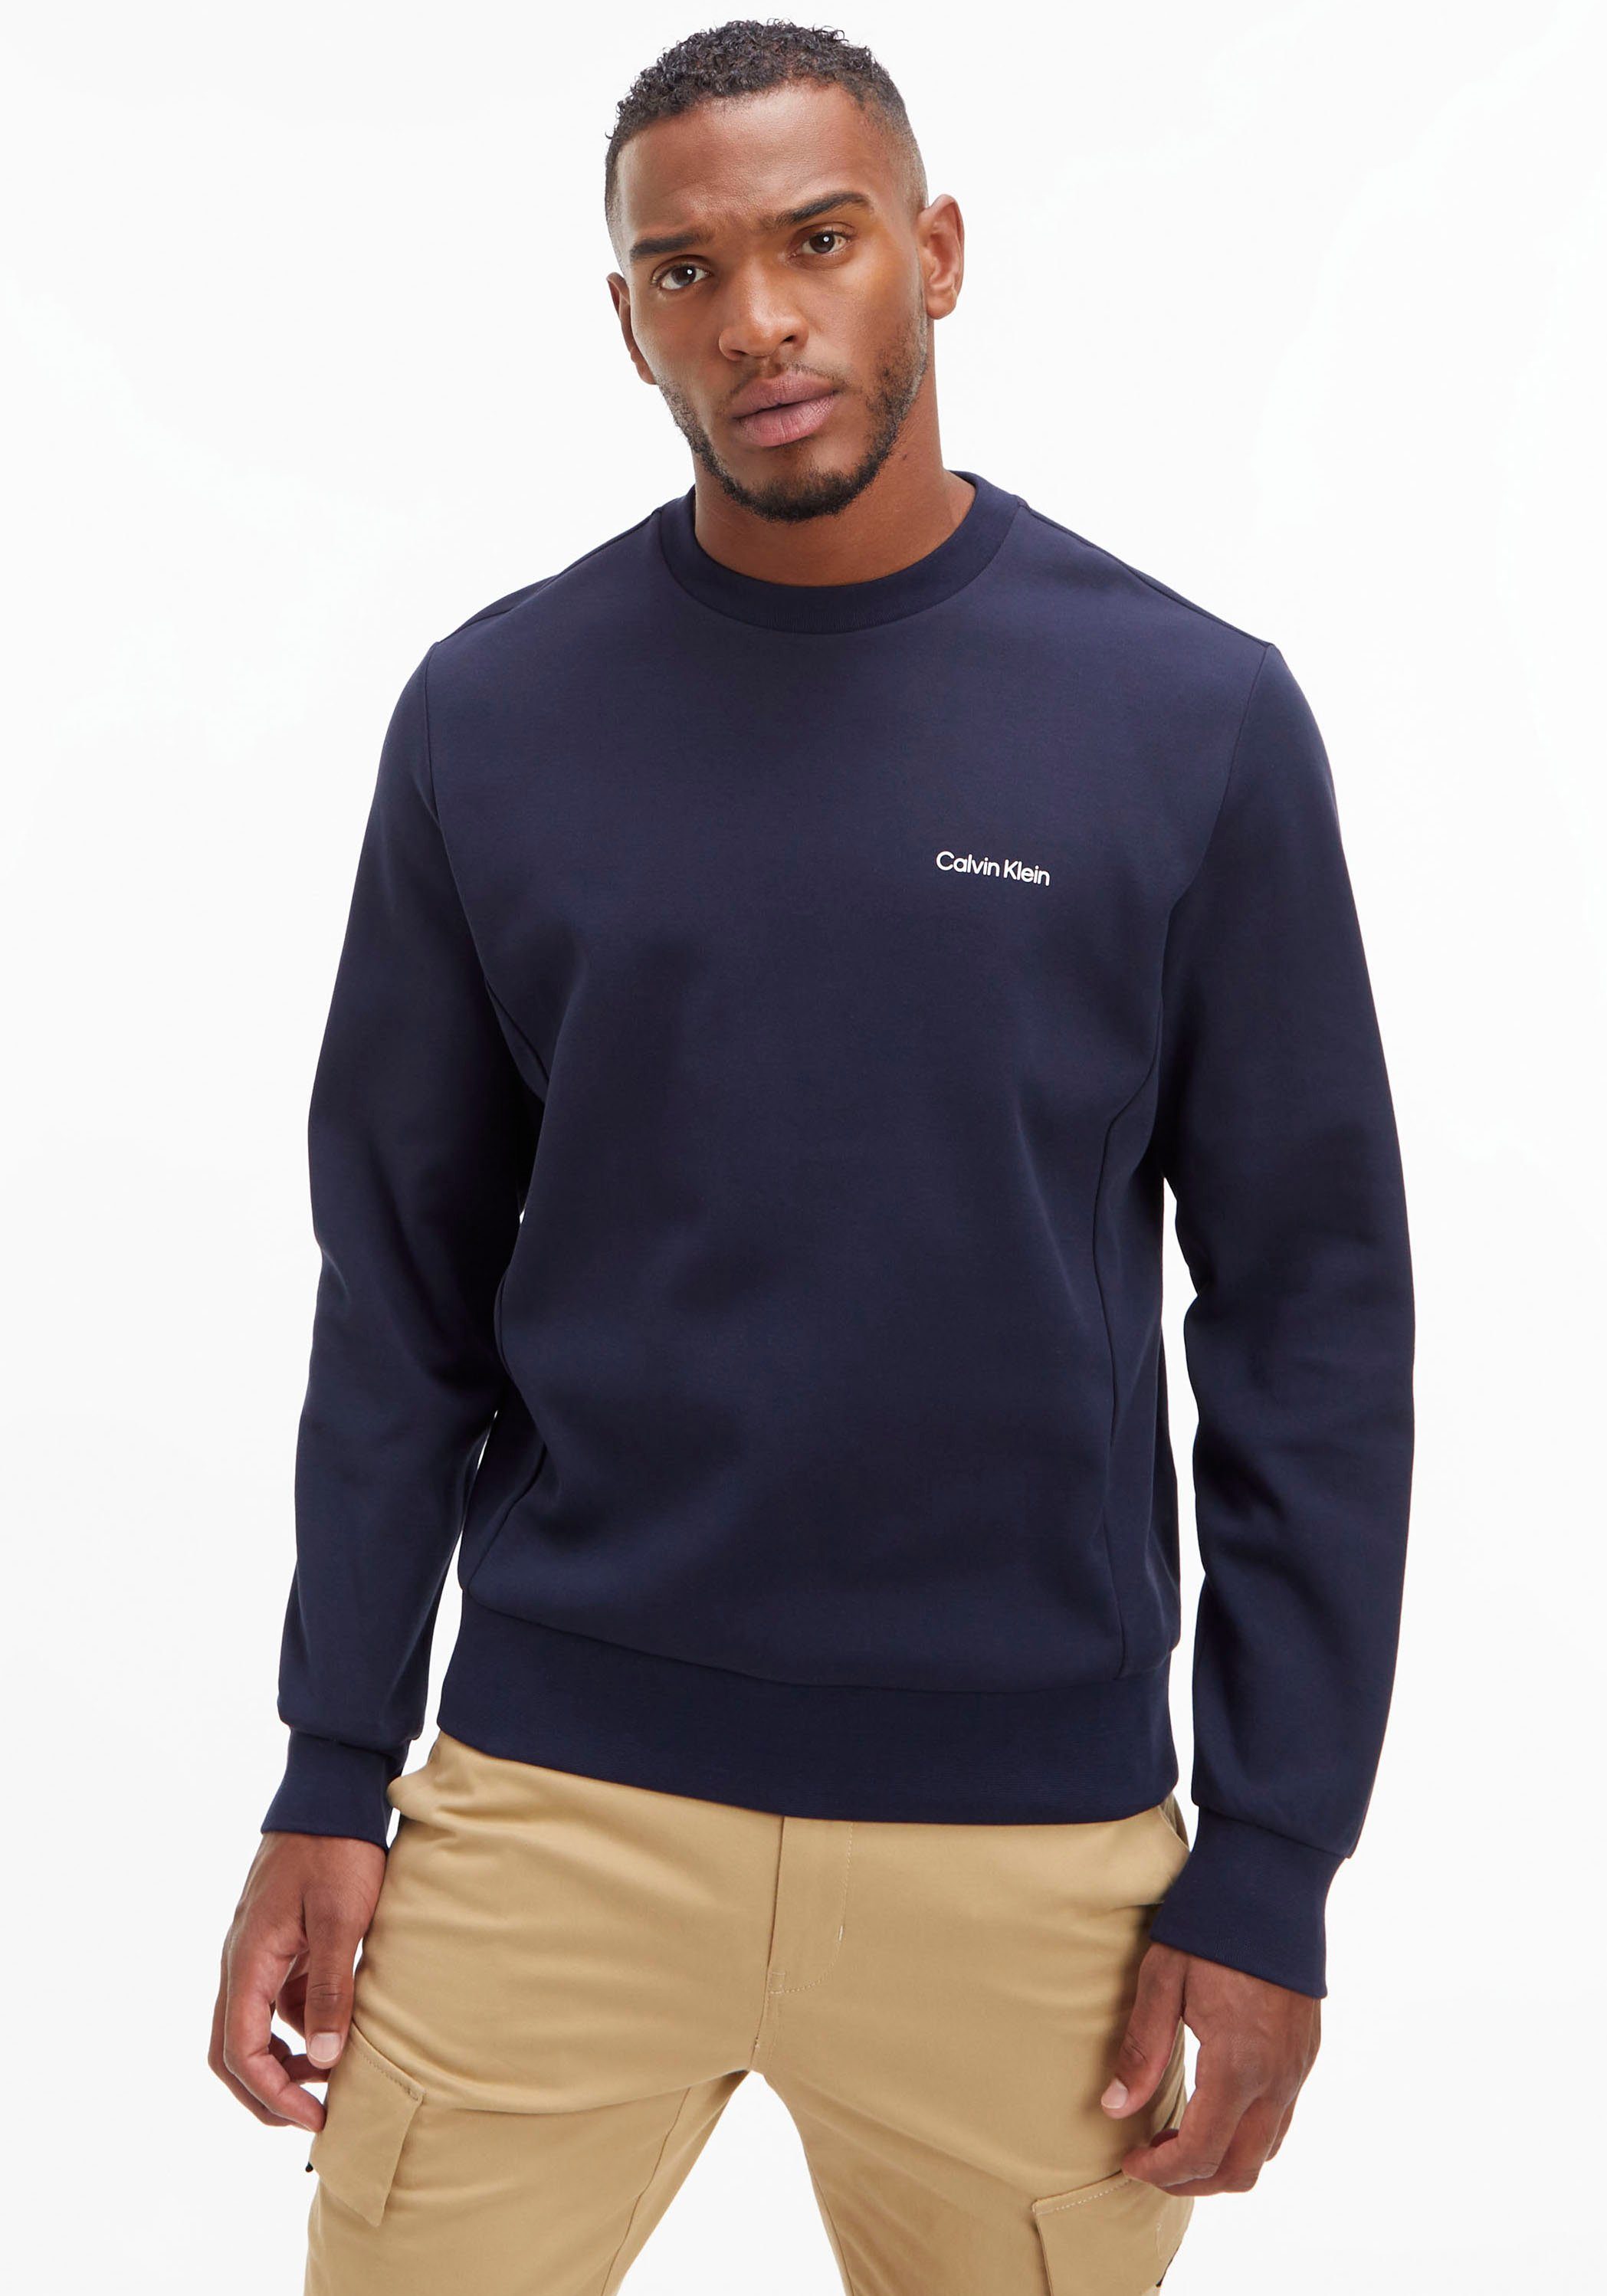 LOGO MICRO Klein halsnahmen Calvin mit REPREVE Rundhalsausschnitt marine SWEATSHIRT Sweatshirt